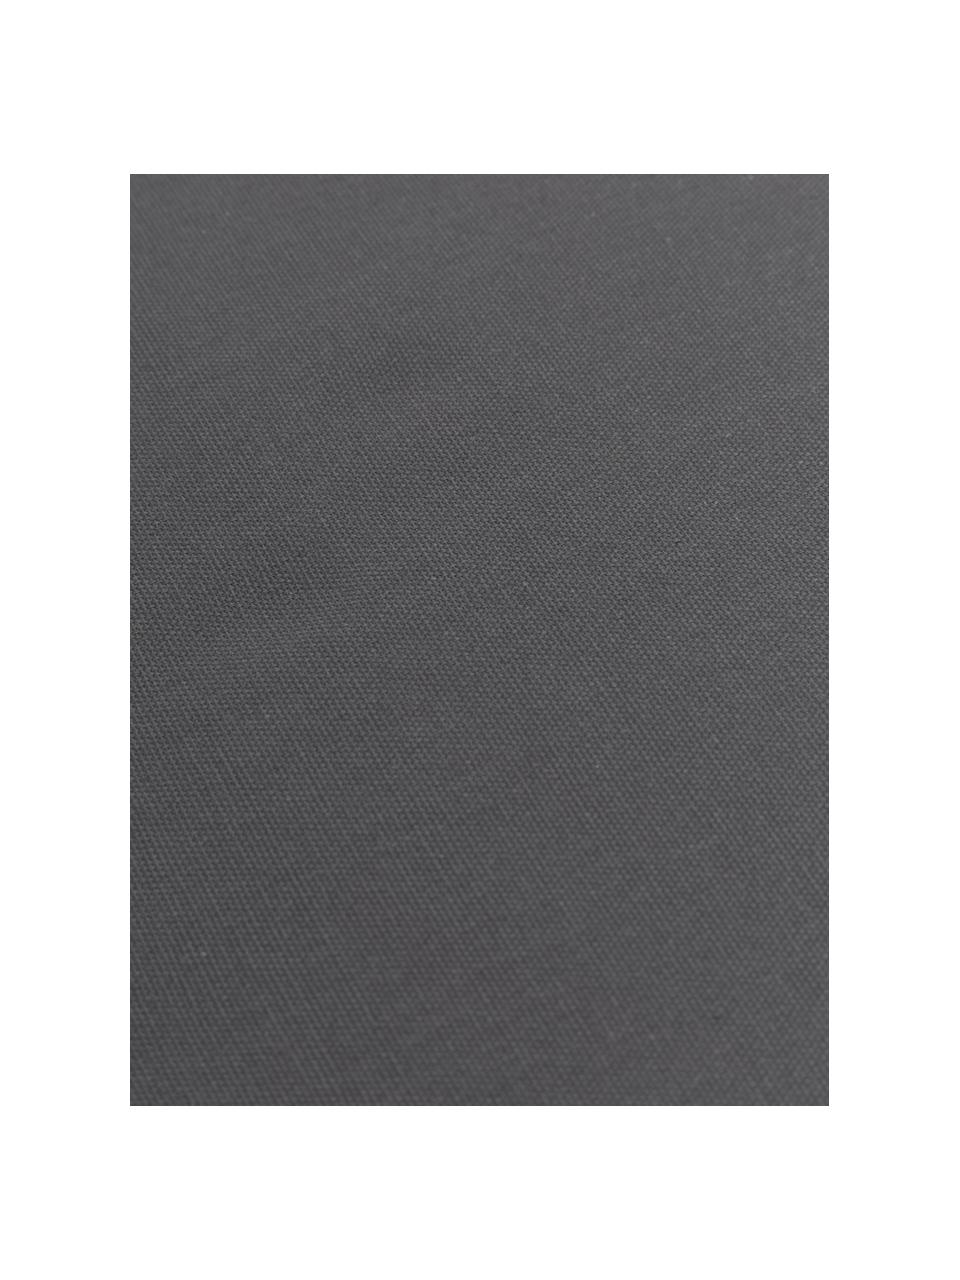 Cuscino sedia alto in cotone grigio scuro Zoey, Rivestimento: 100% cotone, Grigio scuro, Larg. 40 x Lung. 40 cm